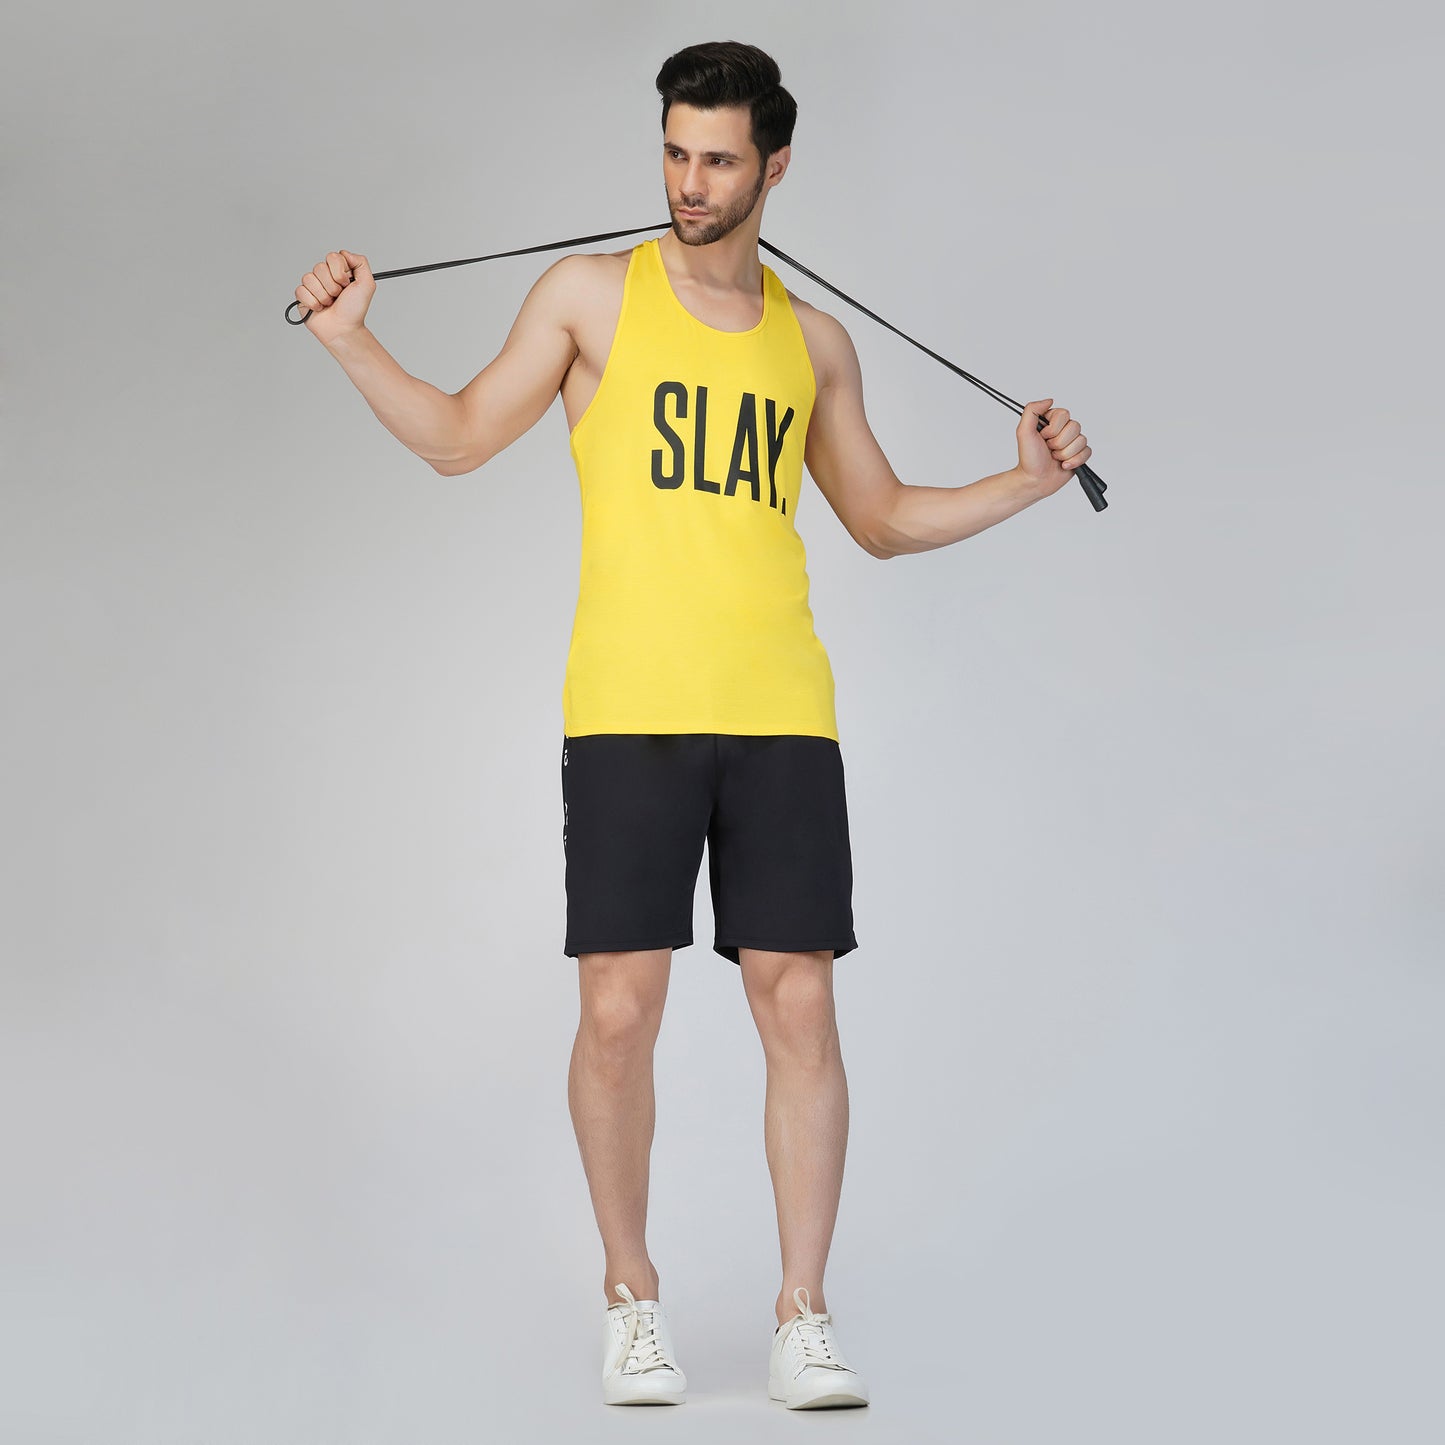 SLAY. Men's Yellow Gym Vest